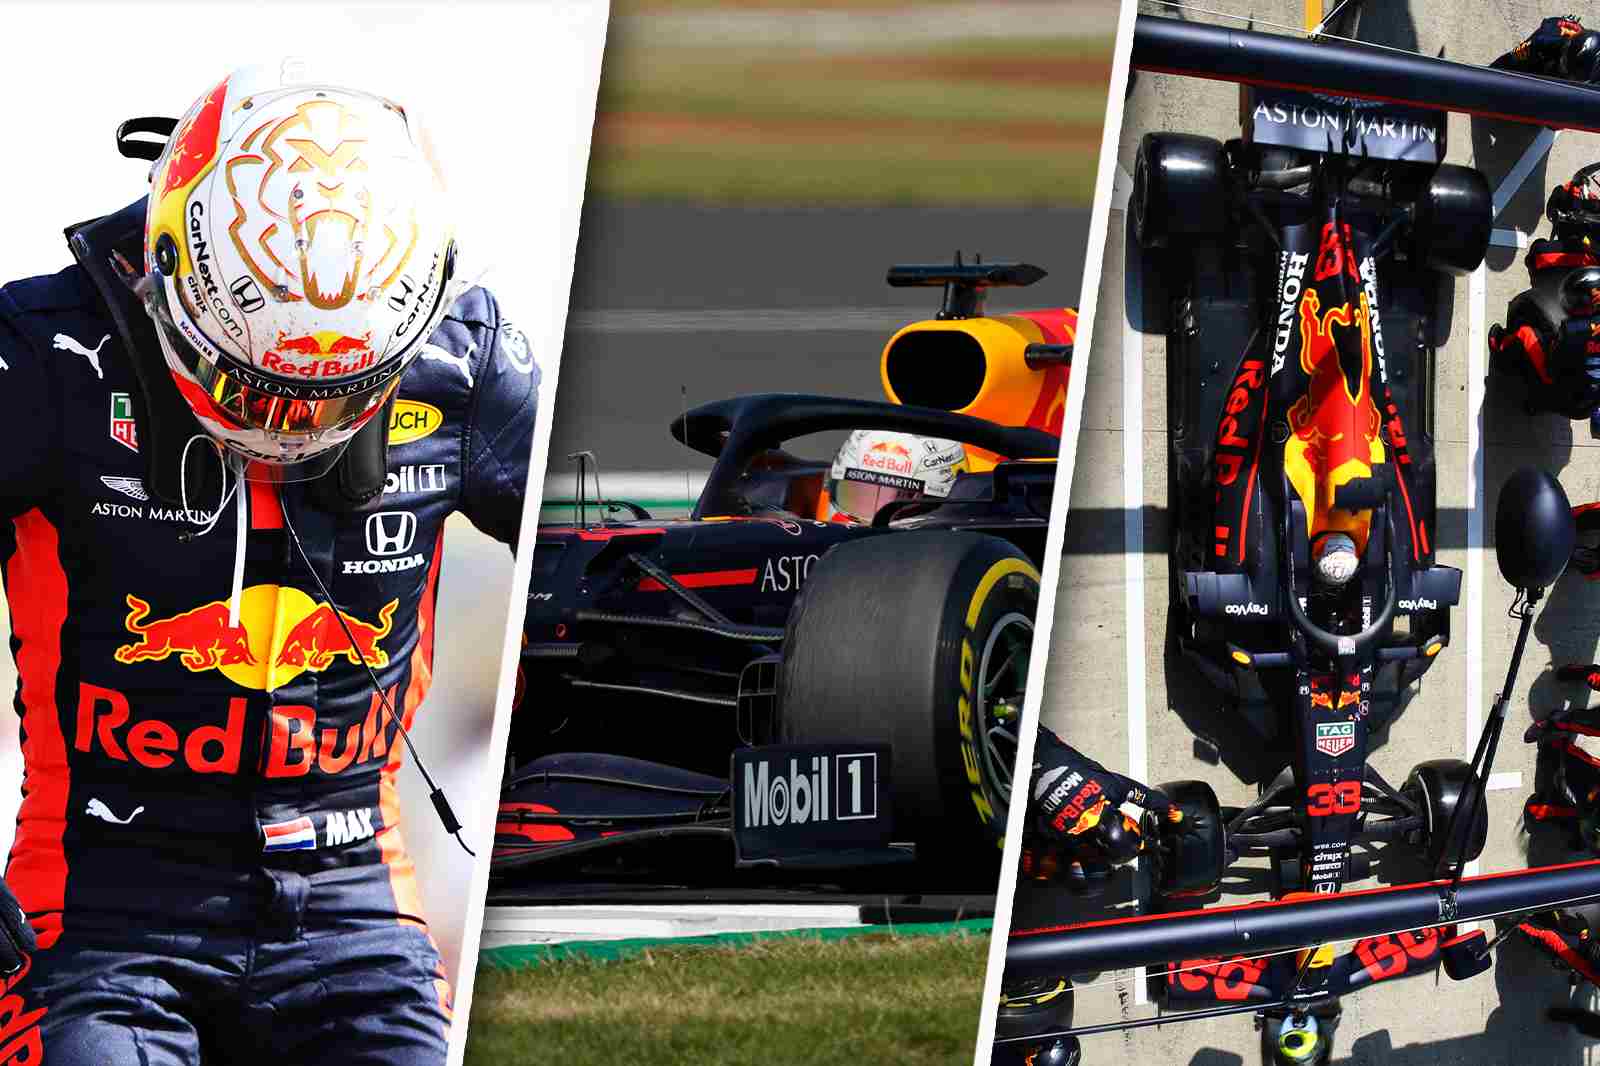 GP dos 70 Anos da Fórmula 1 foi movimentado e marcou a primeira vitória de Max Verstappen em 2020. Veja a história da corrida em imagens: